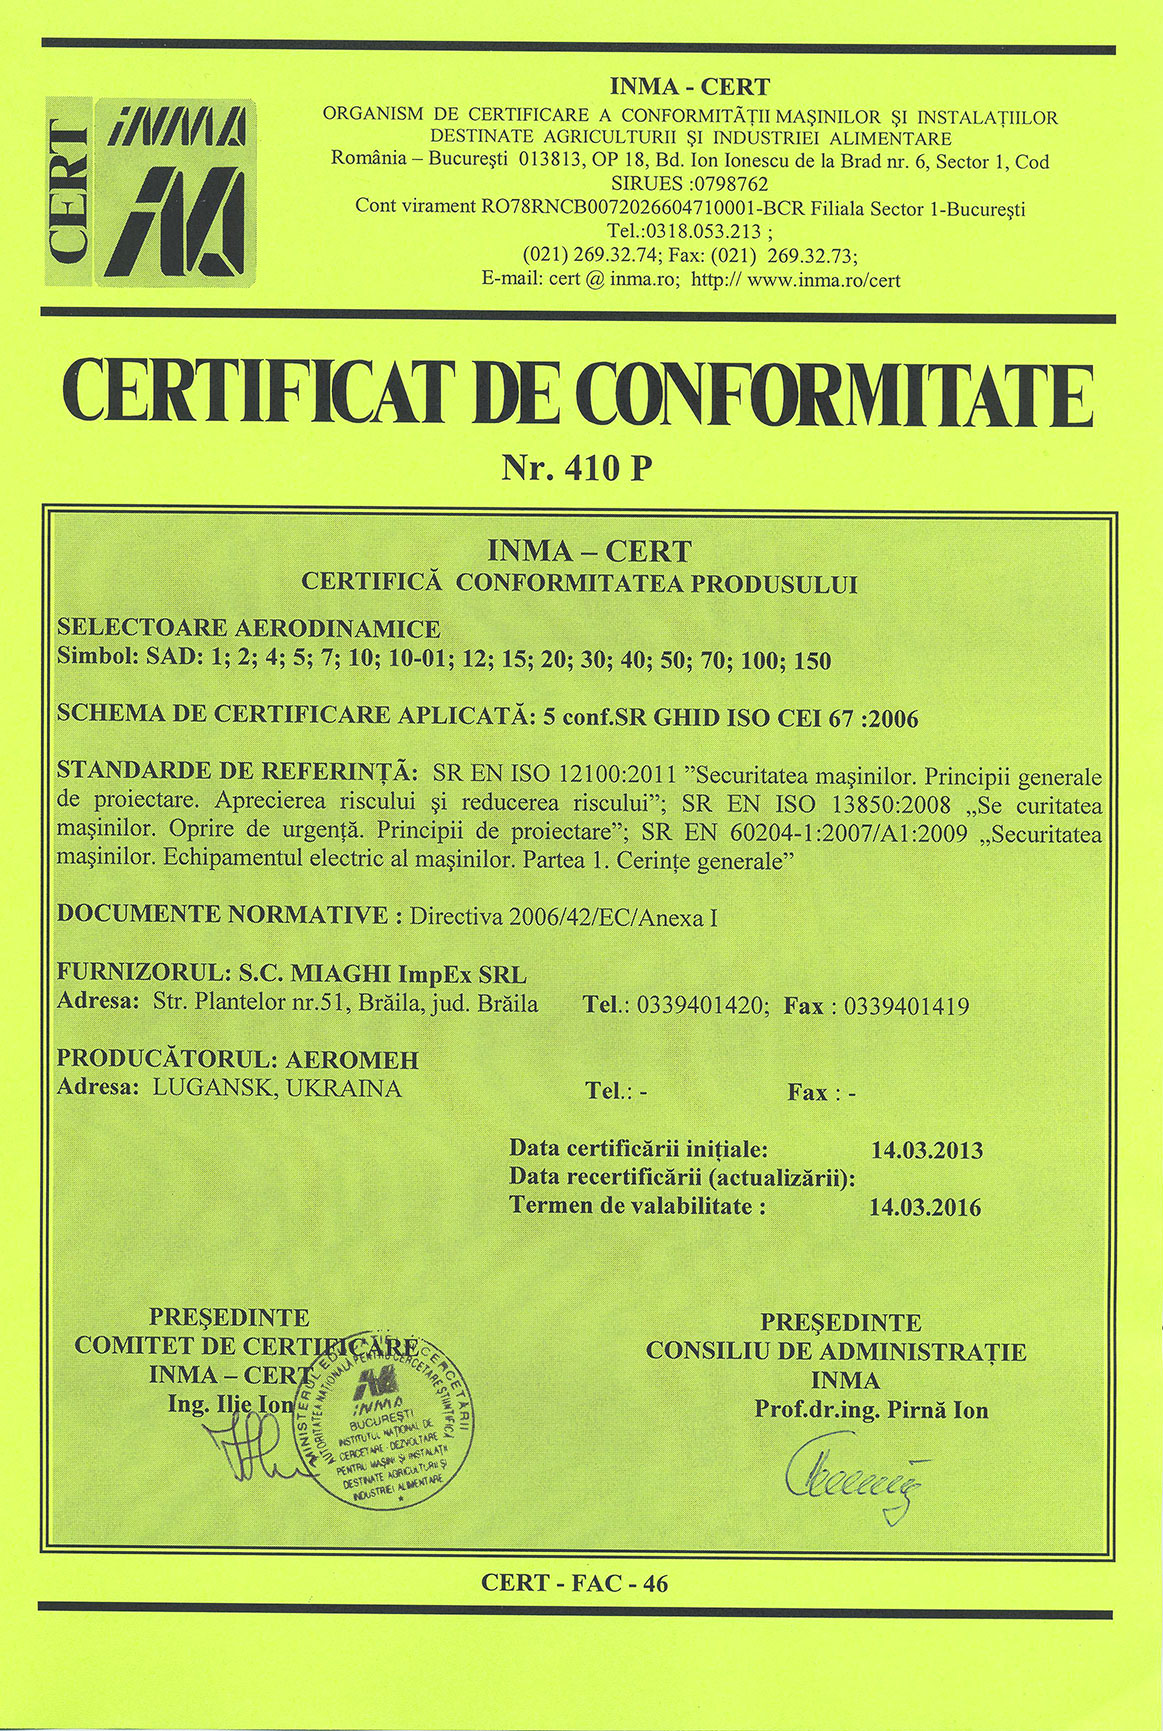 Сертификат CE СЕ для легальной реализации на рынках ЕС сепаратор CAD-1, сепаратор CAD-4, сепаратор CAD-7, сепаратор CAD-10-01, сепаратор CAD-14, сепаратор CAD-30, сепаратор CAD-50, сепаратор CAD-70, сепаратор CAD-150